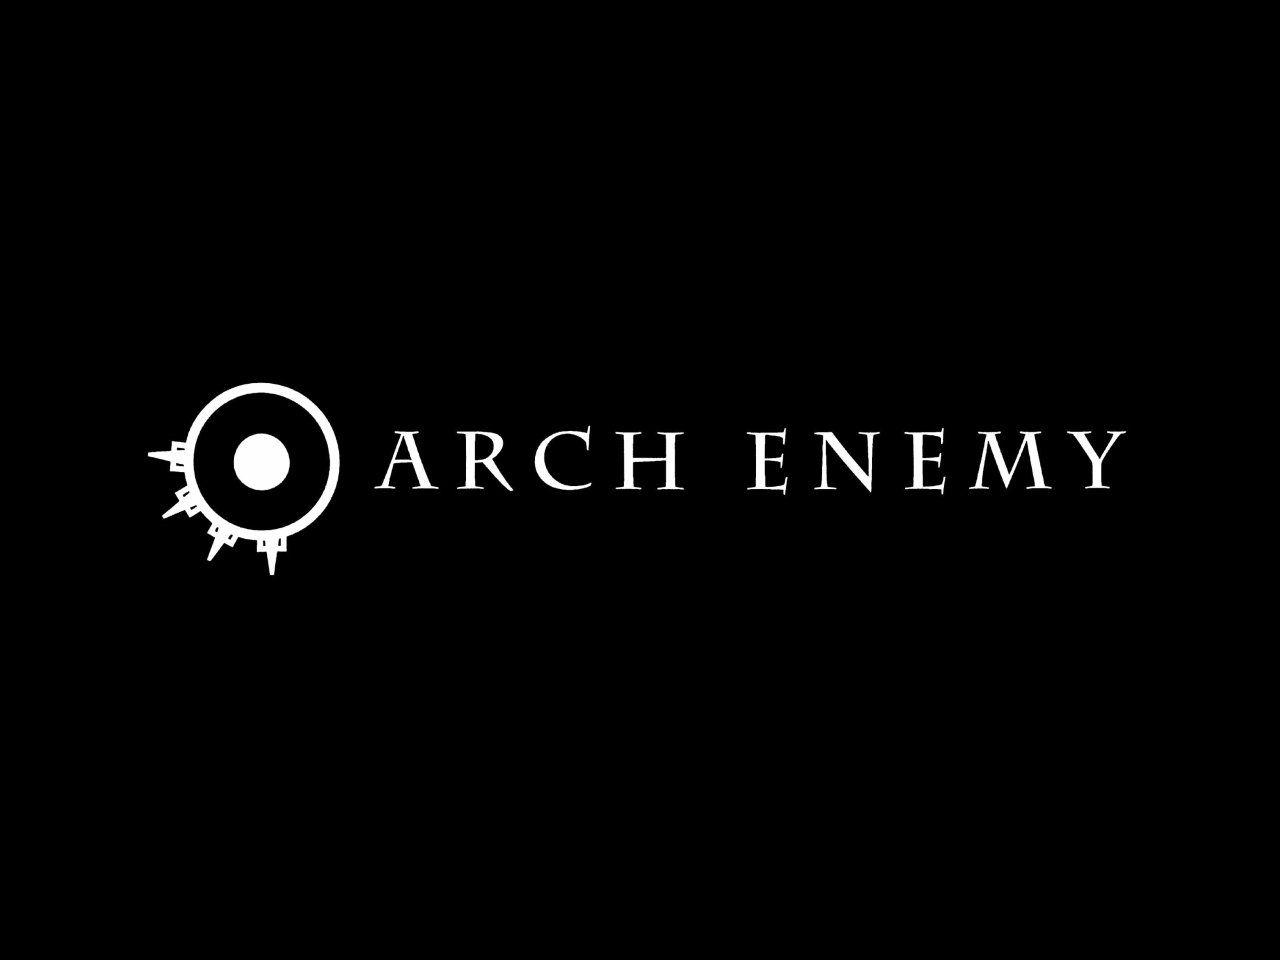 Arch Enemy Logo - p BHC. Arch enemy, Death metal